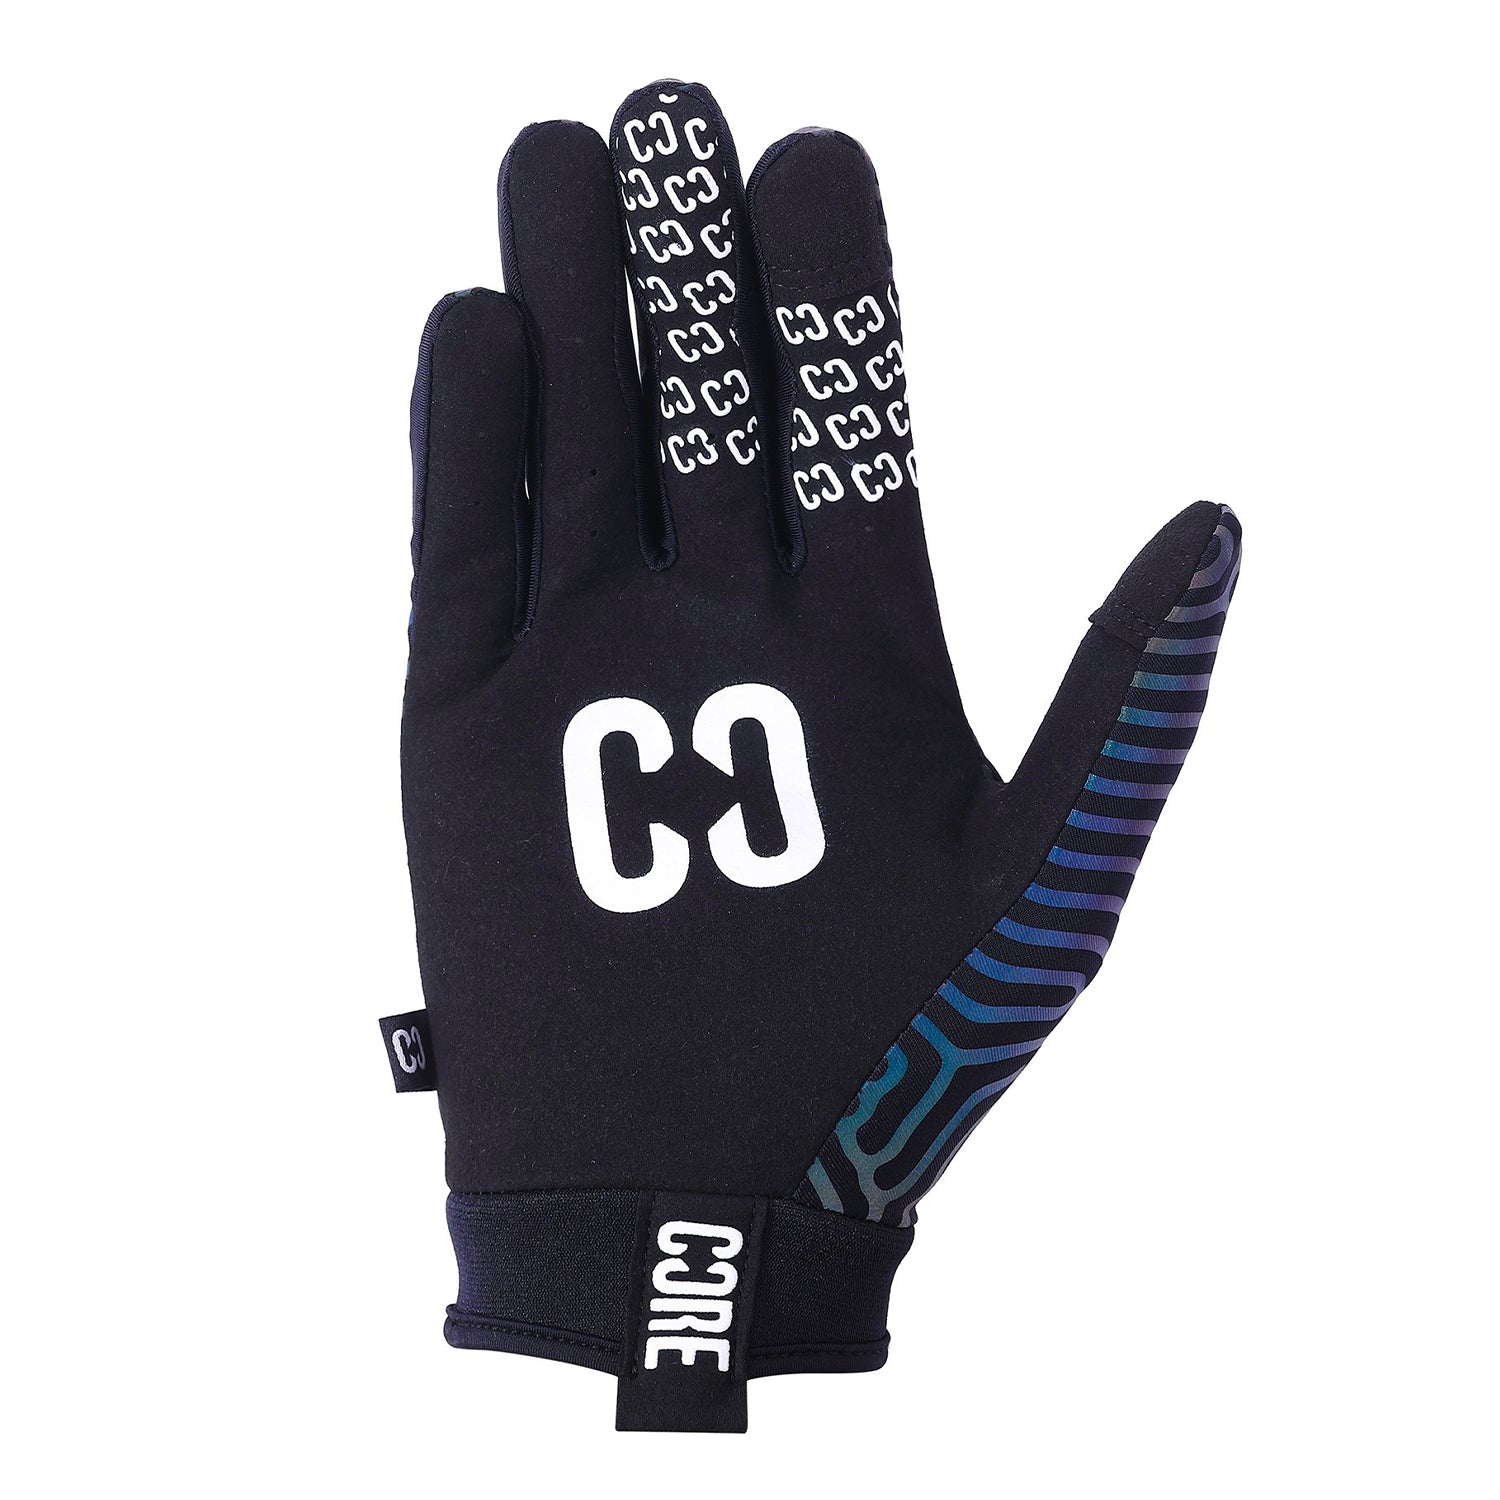 CORE Protection Aero Gloves - Neochrome - Prime Delux Store